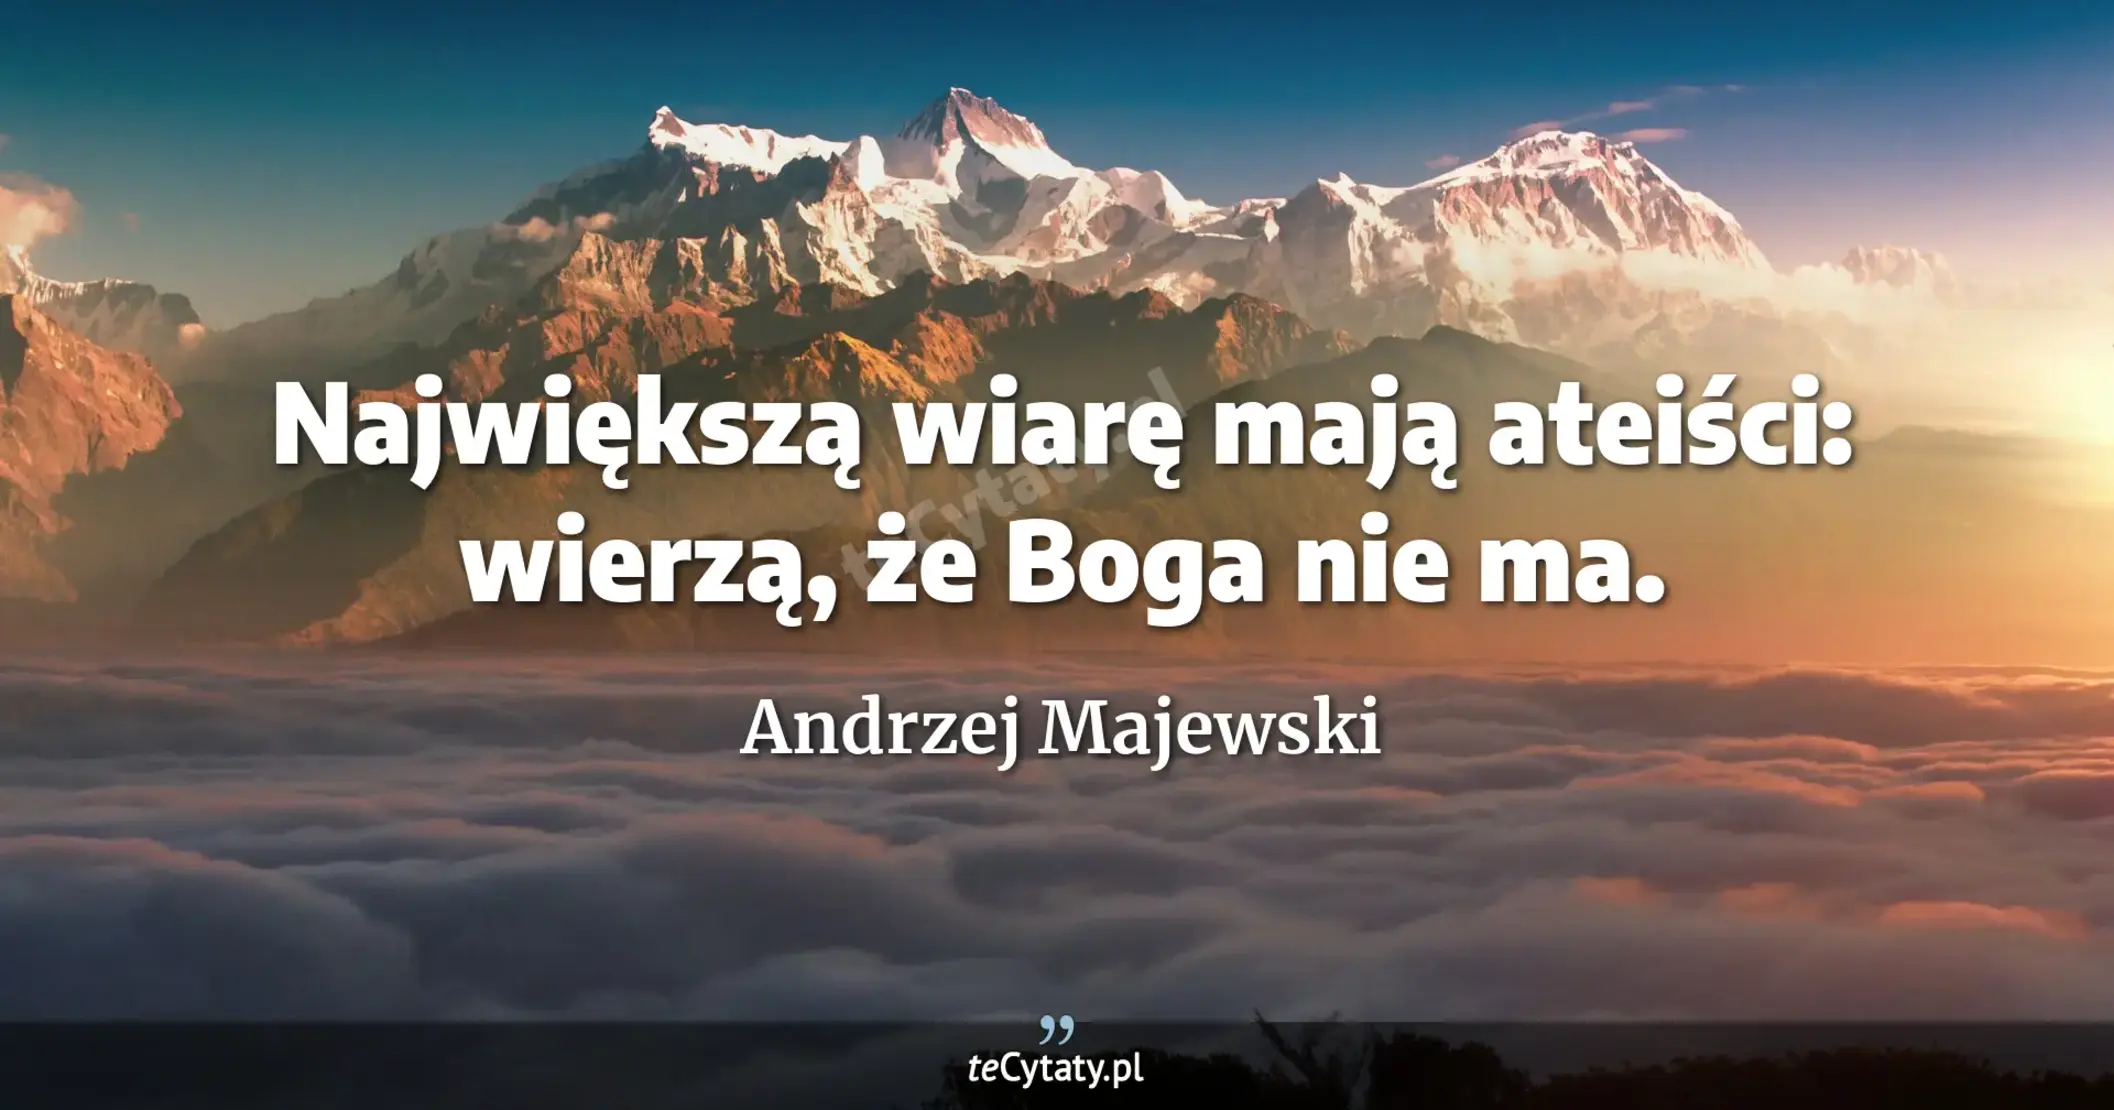 Największą wiarę mają ateiści: wierzą, że Boga nie ma. - Andrzej Majewski